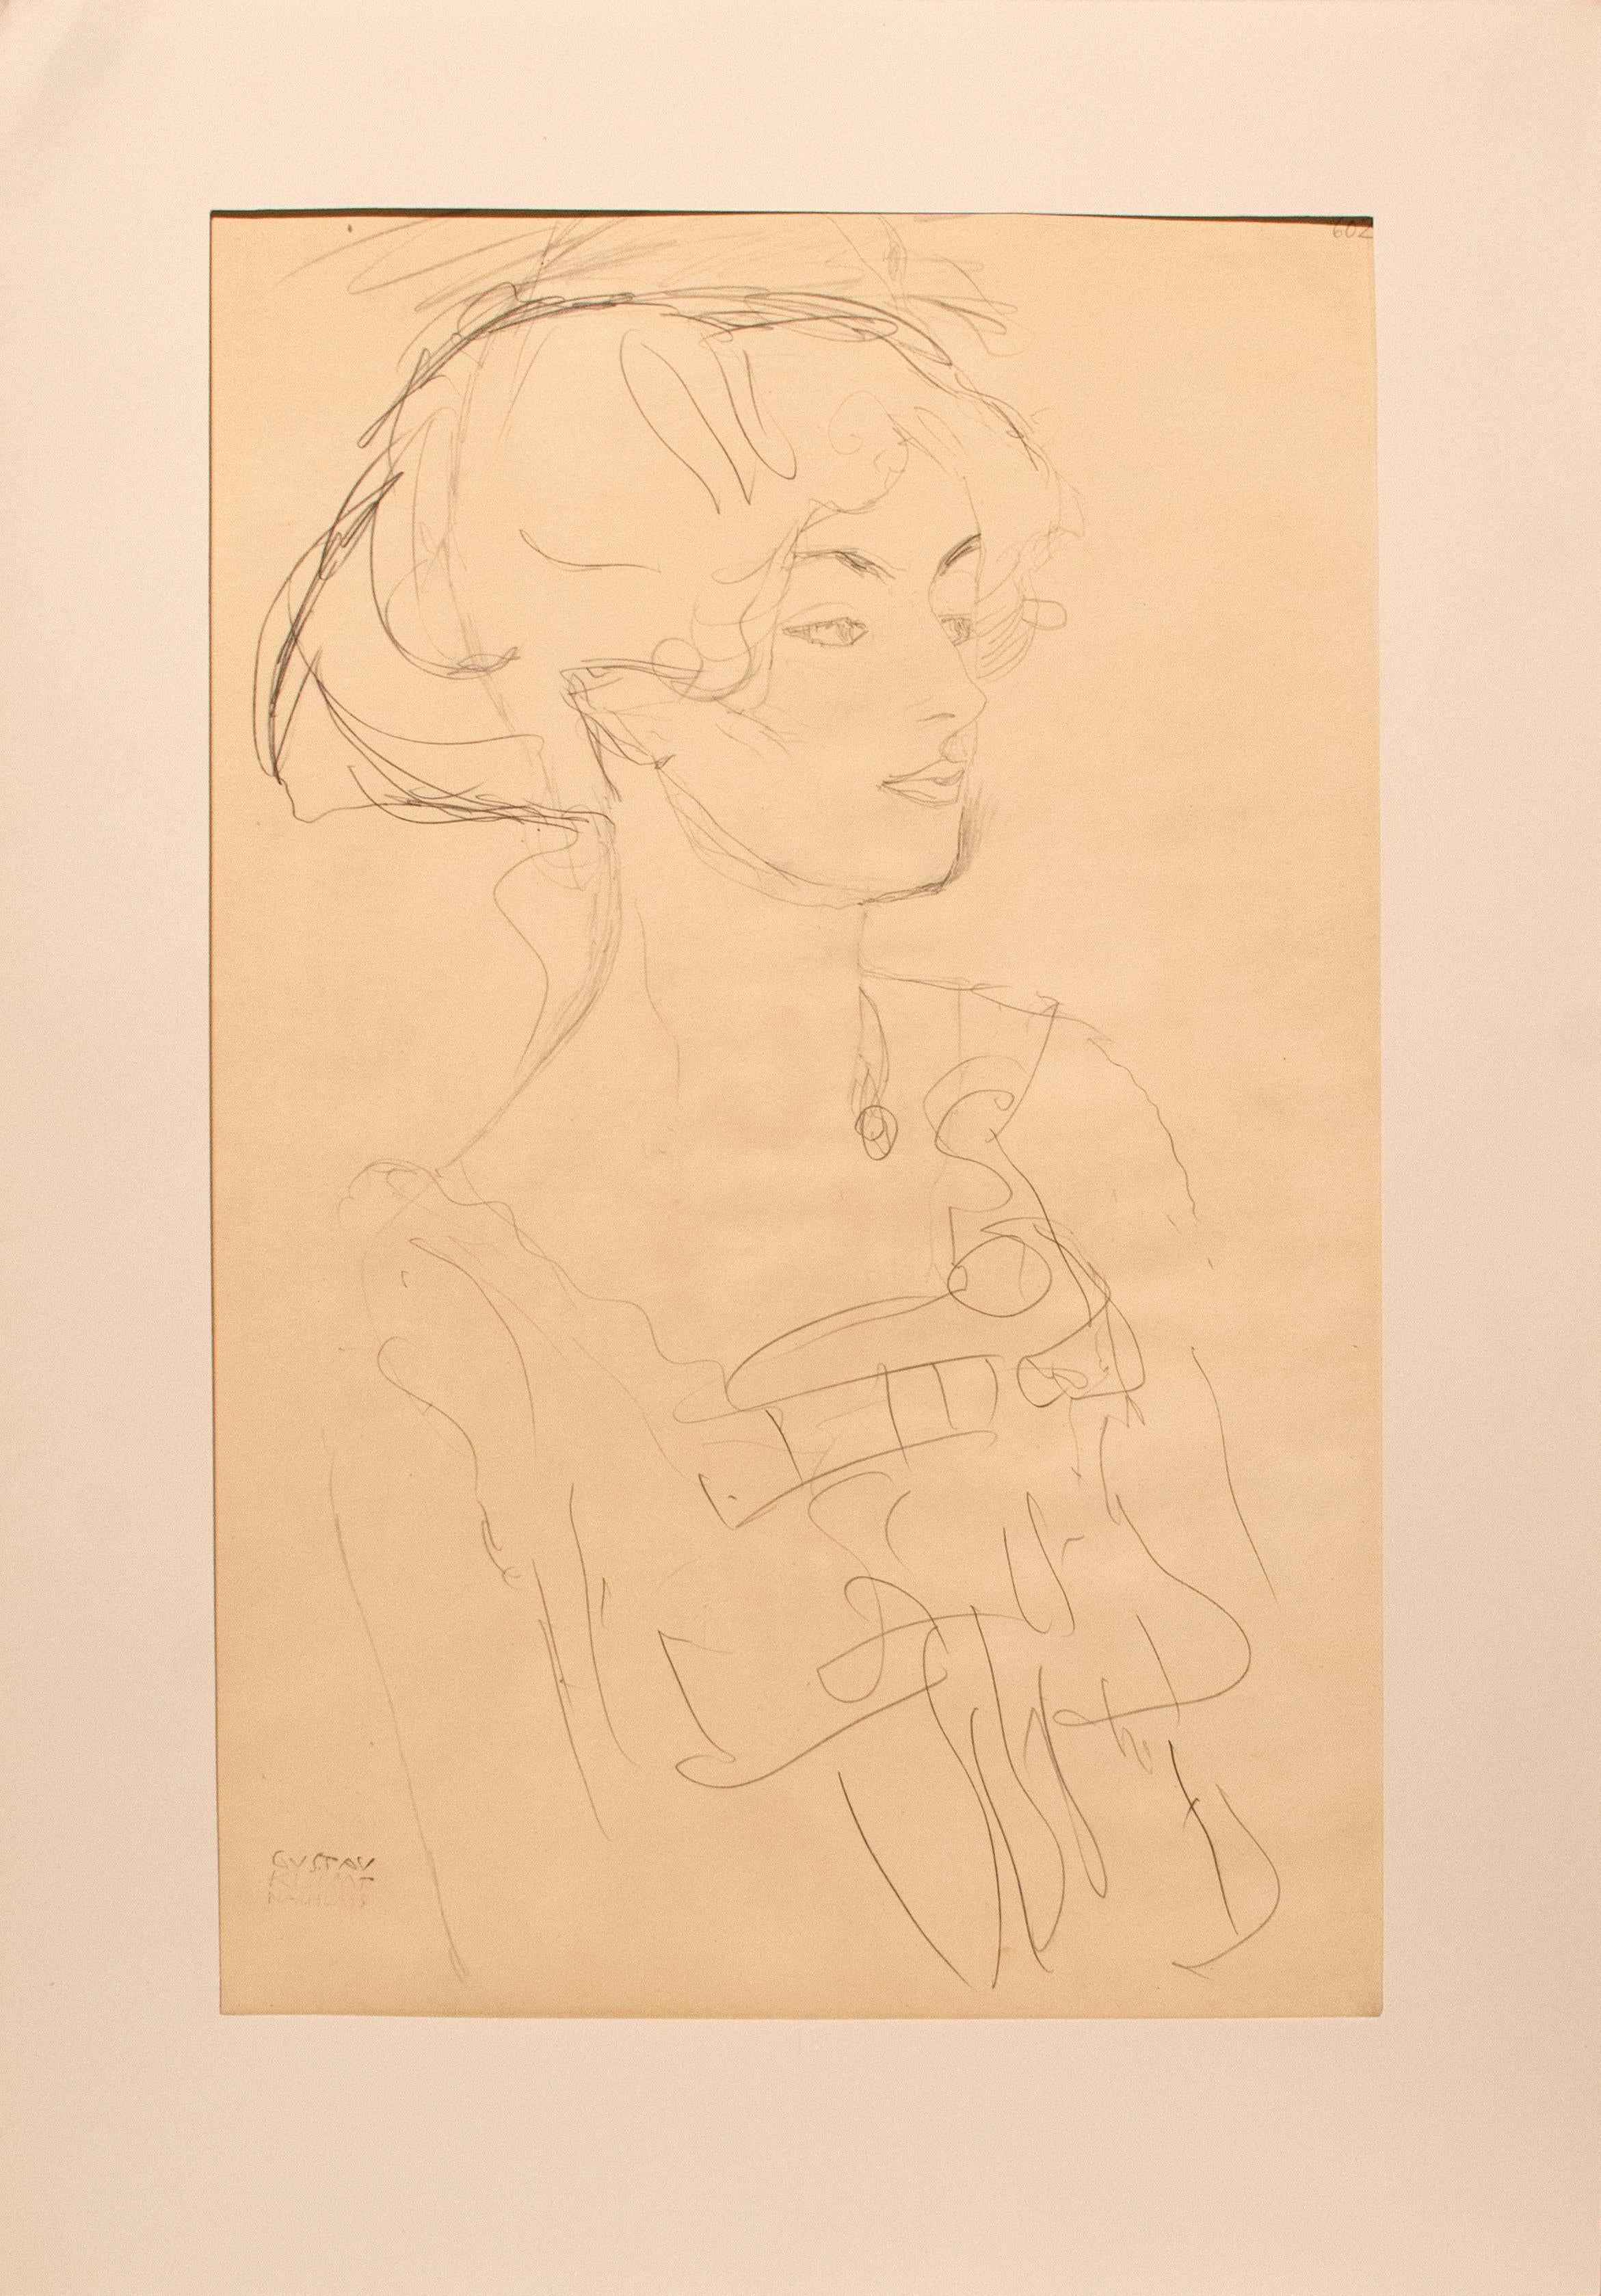 Sans titre (r) - Print de (after) Gustav Klimt